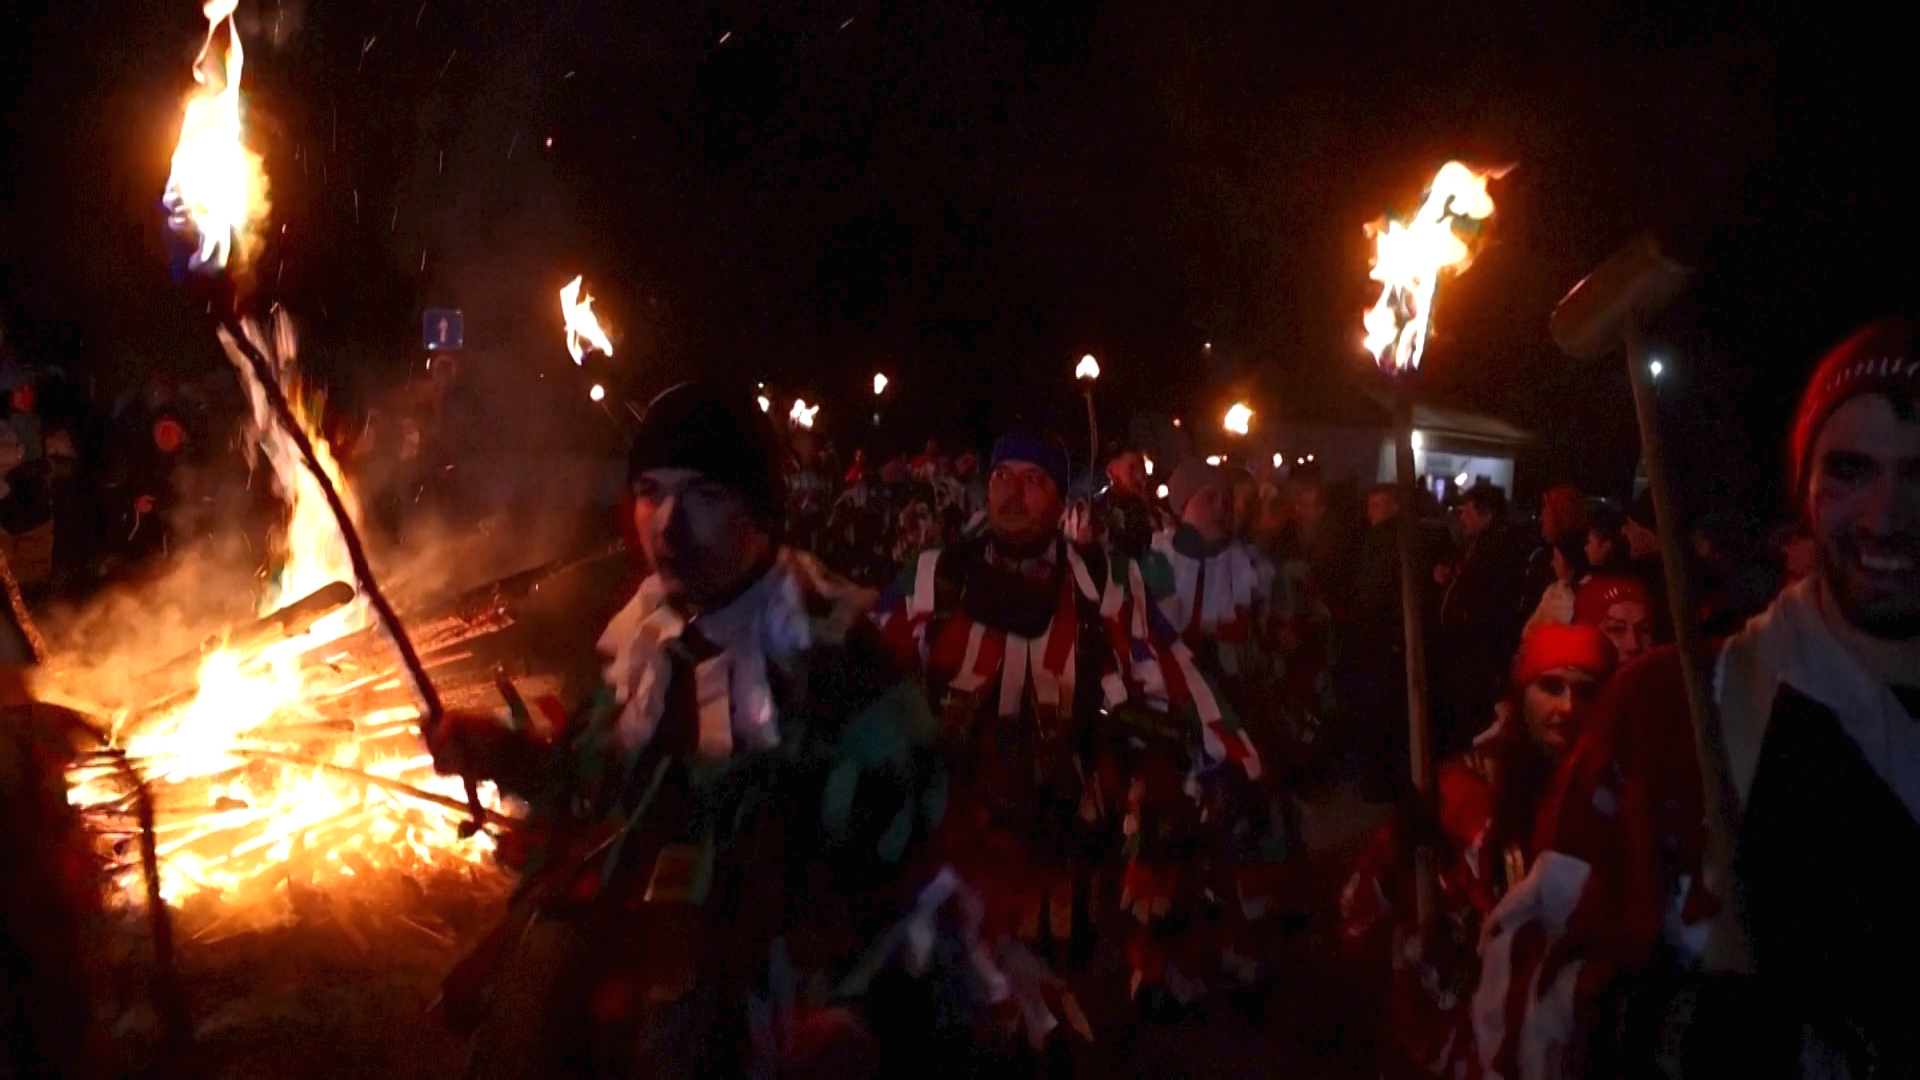 Βίντεο: Βούλγαροι χωρικοί διώχνουν τα κακά πνεύματα σε τελετουργικό για την υποδοχή του νέου έτους